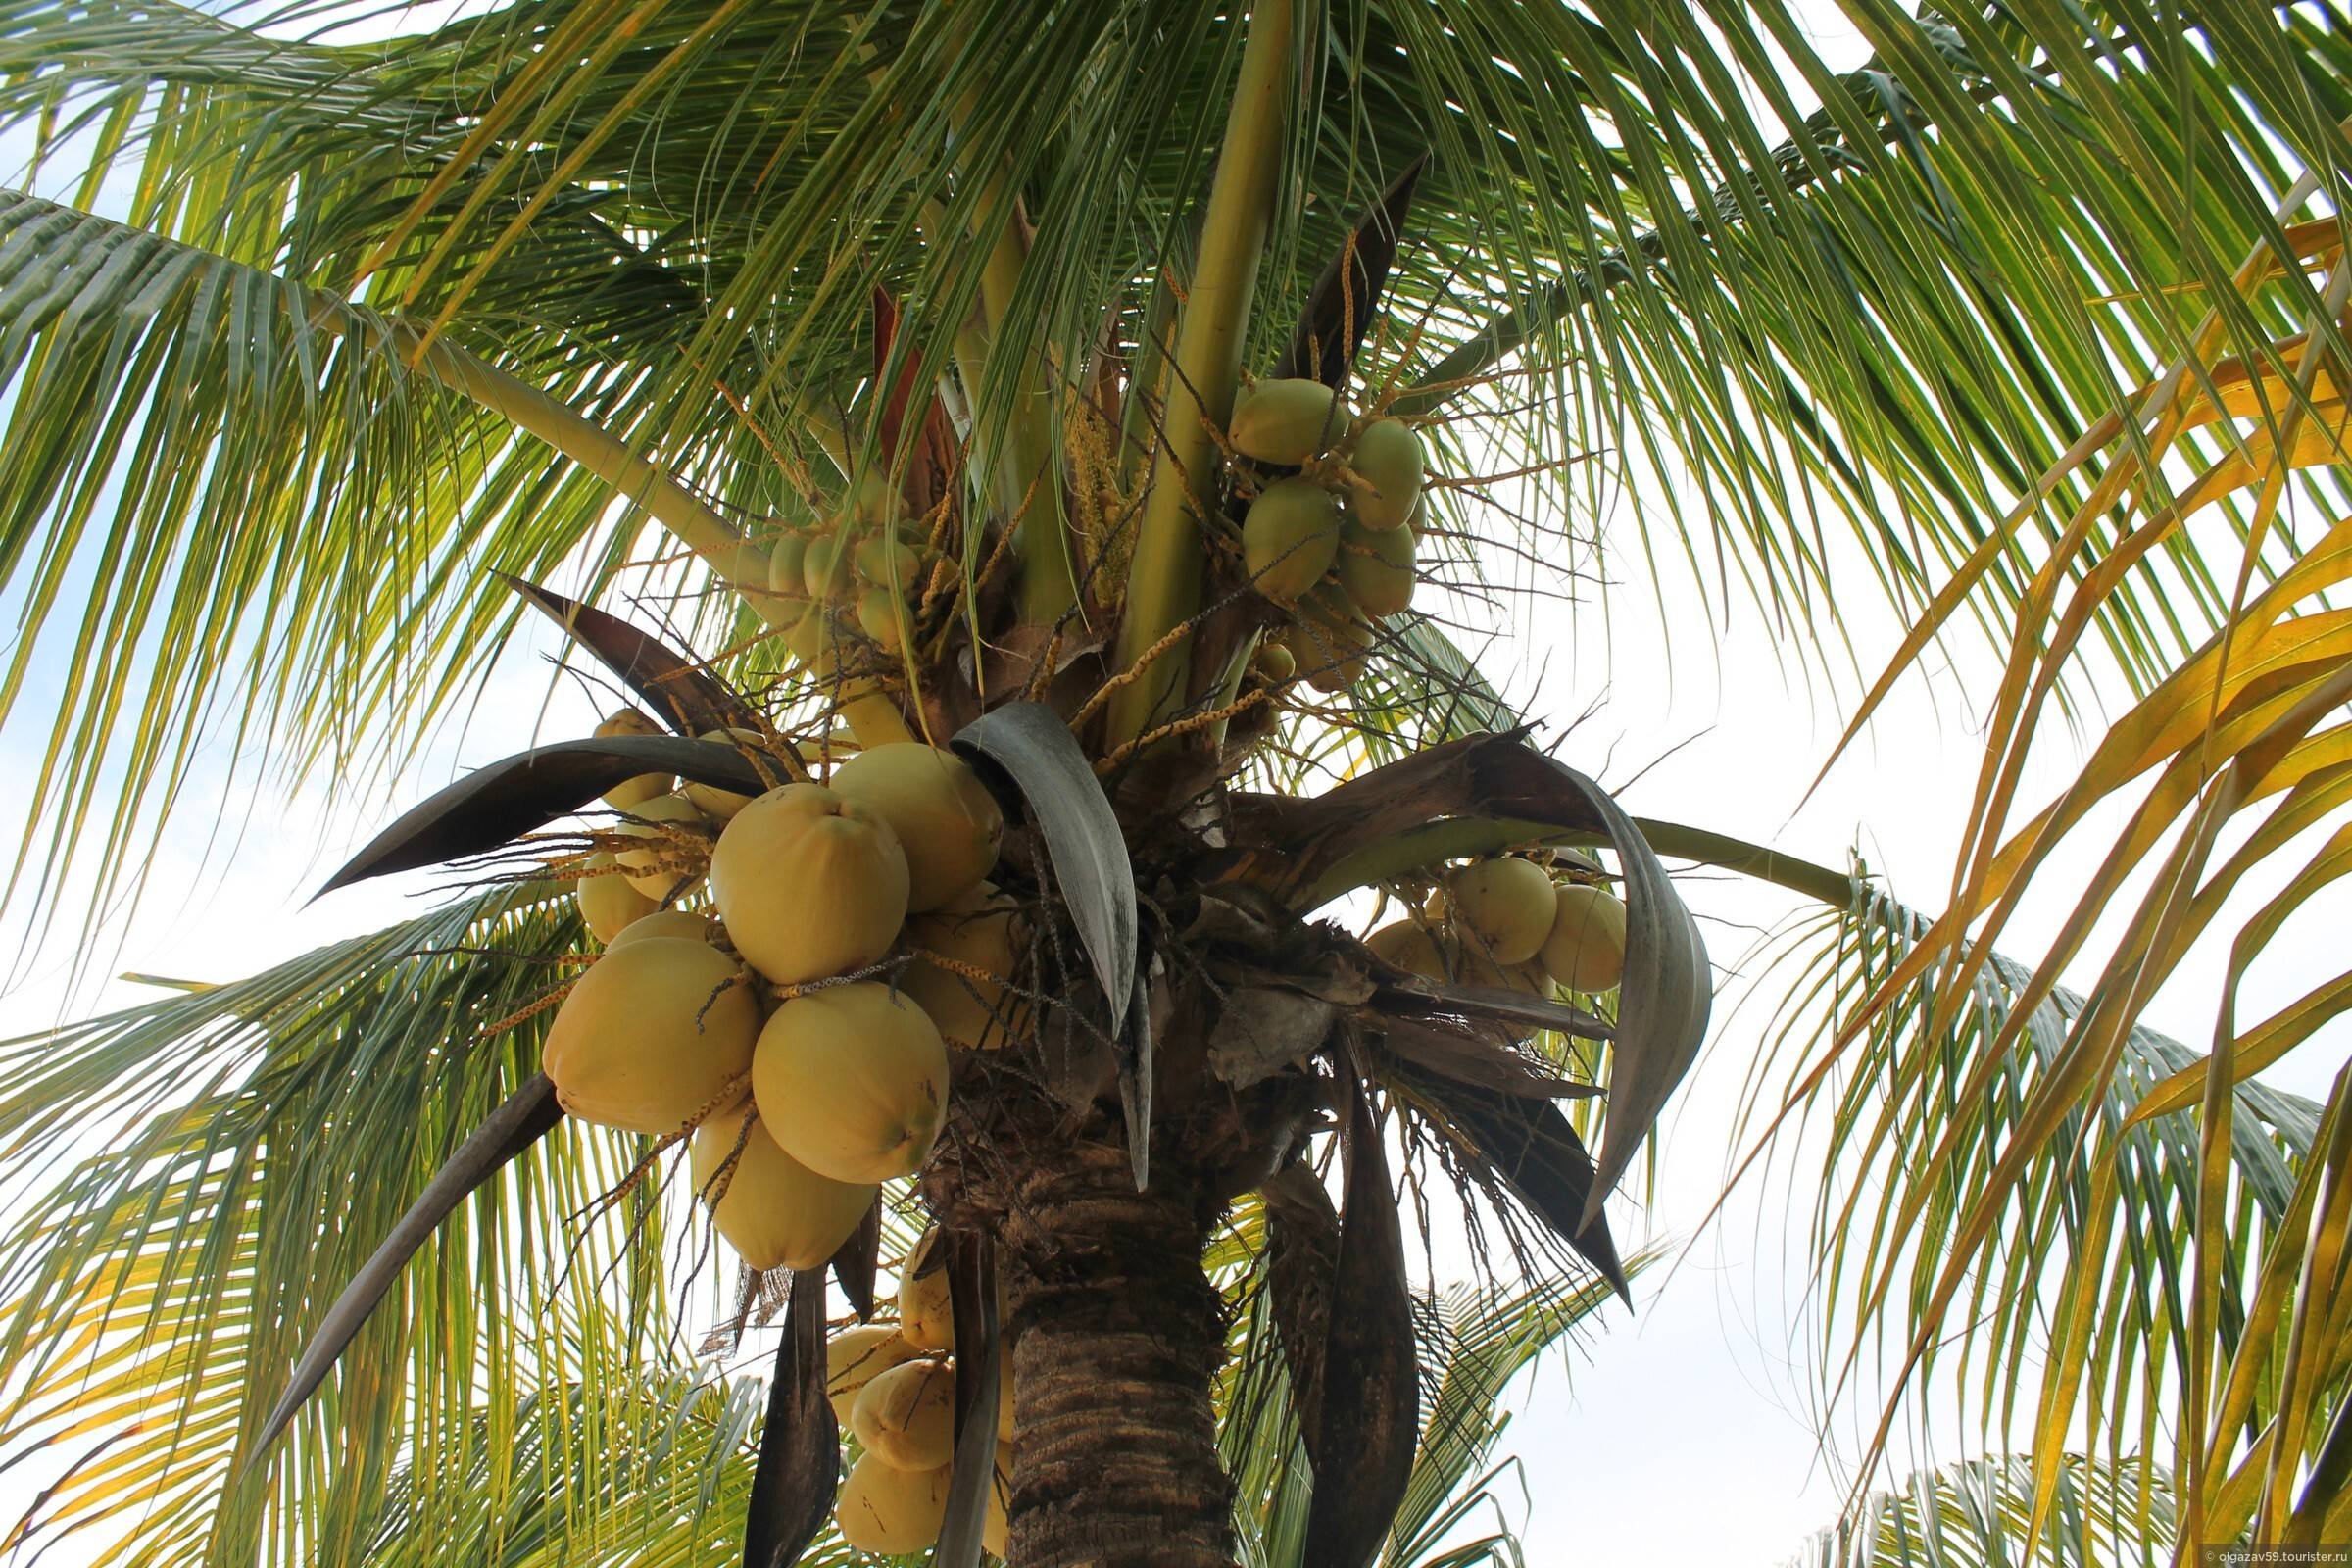 Как вырастить кокос в домашних условиях? уход за кокосовой пальмой дома